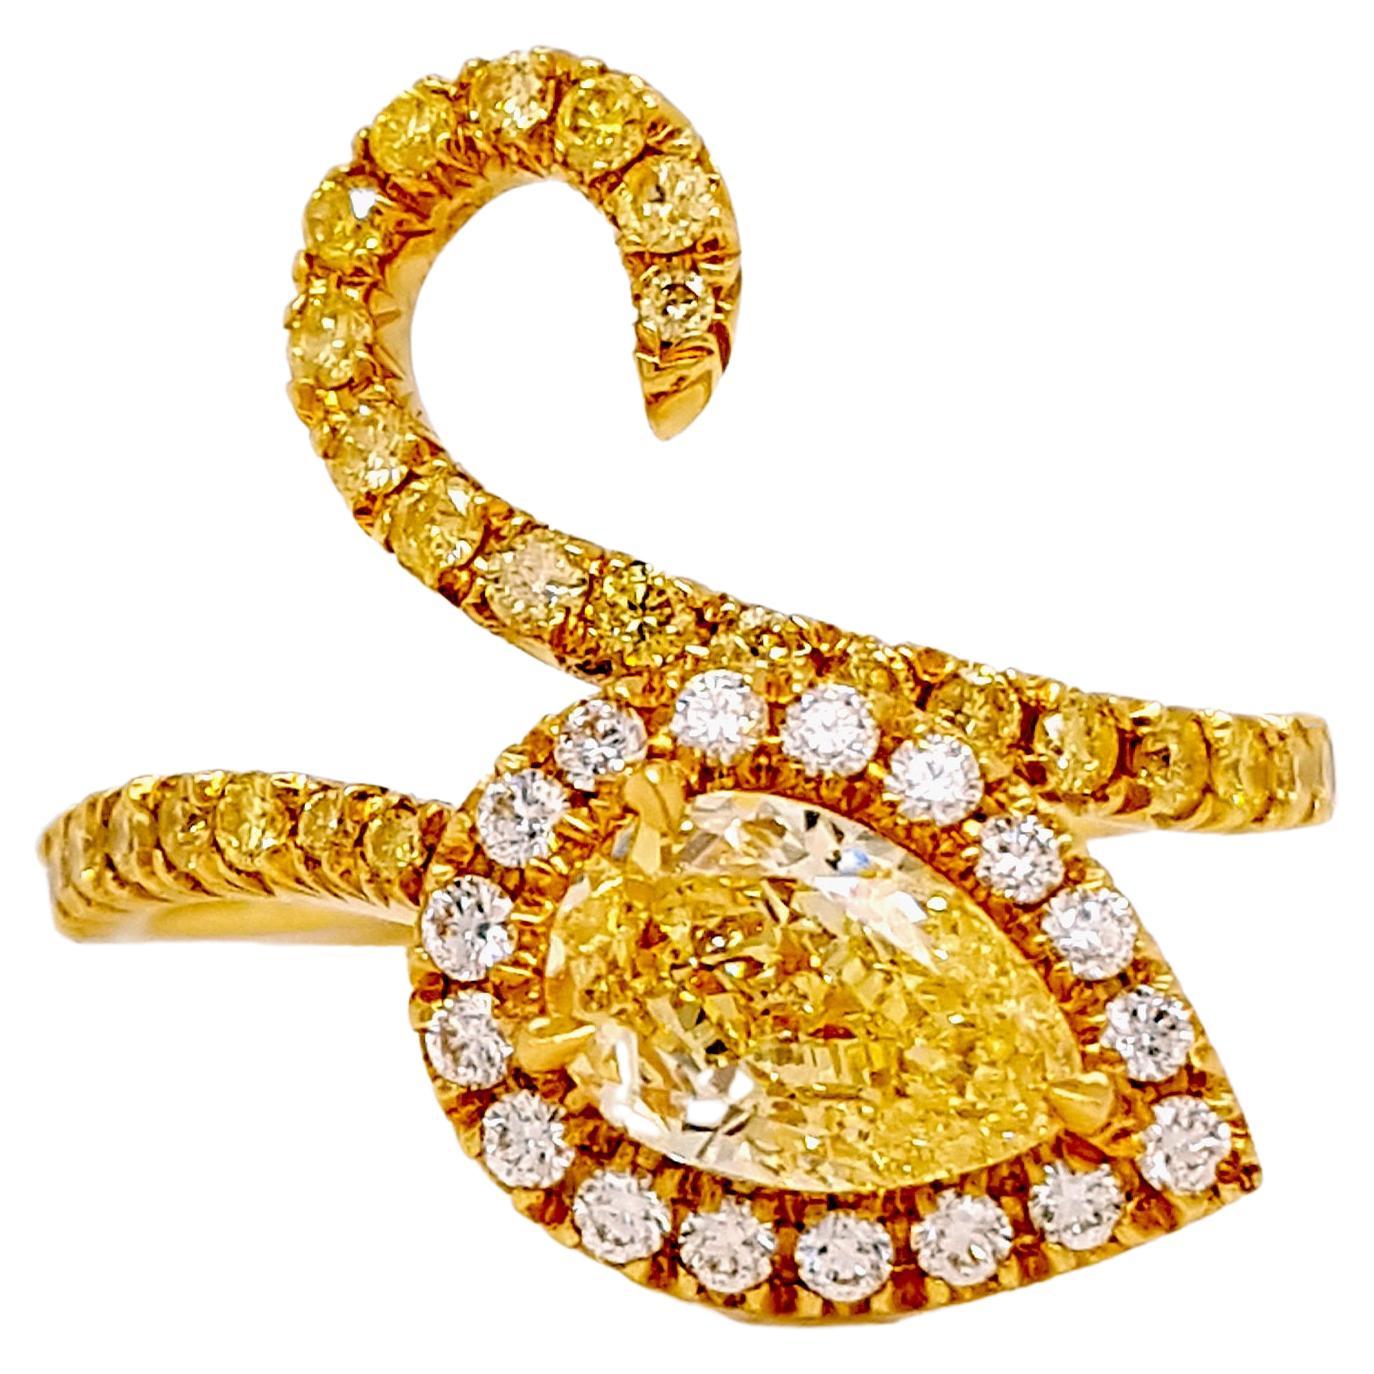 Bague de cocktail de 1,50 carat en diamant jaune fantaisie et diamants Pave', certifiée GIA.